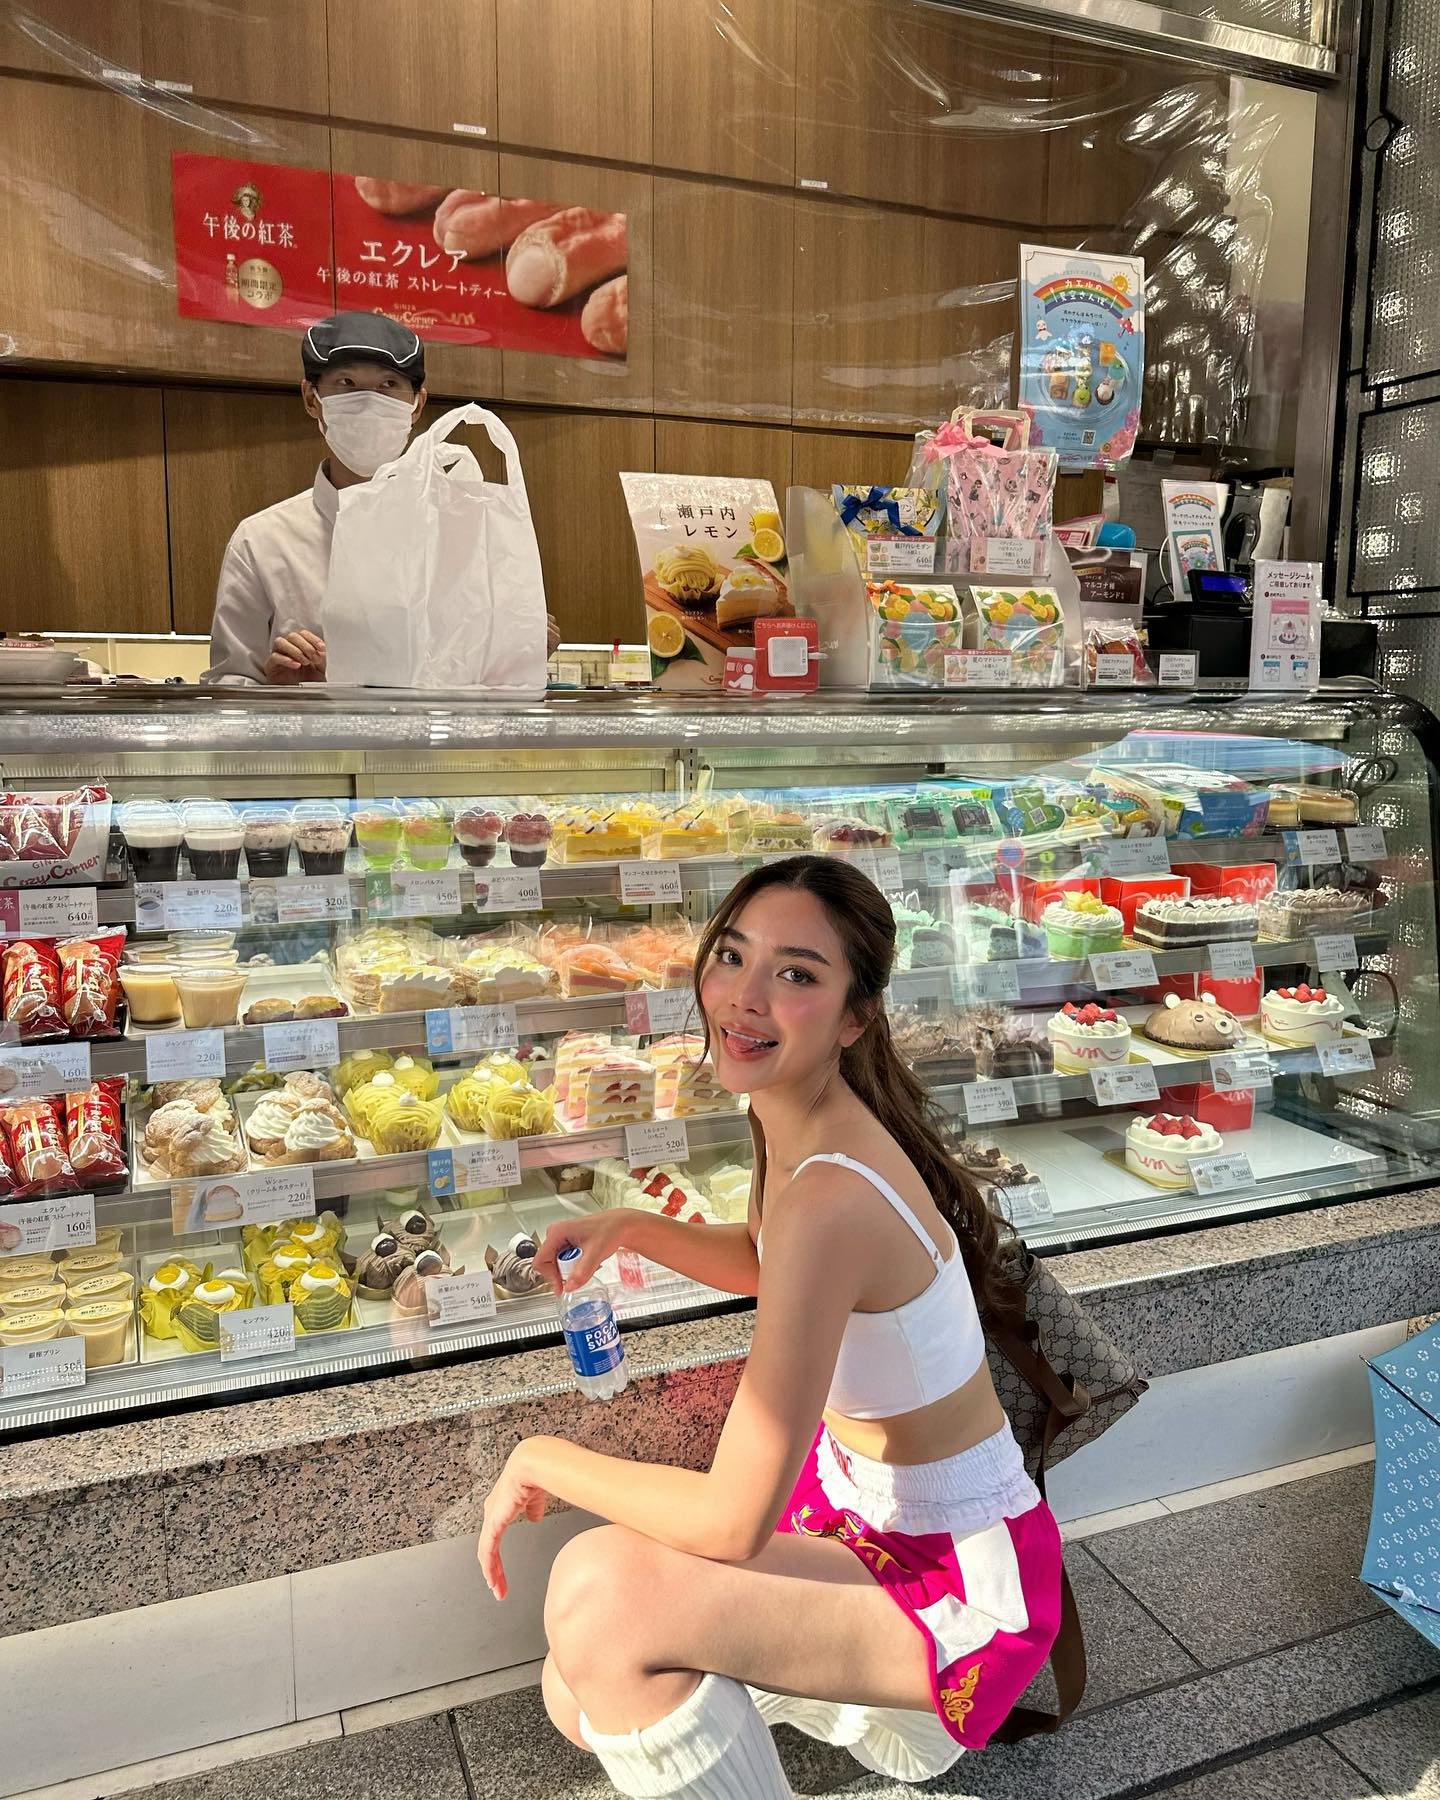 ปราง กัญญ์ณรัณ ถ่ายภาพในร้านขนมเค้กที่ญี่ปุ่น